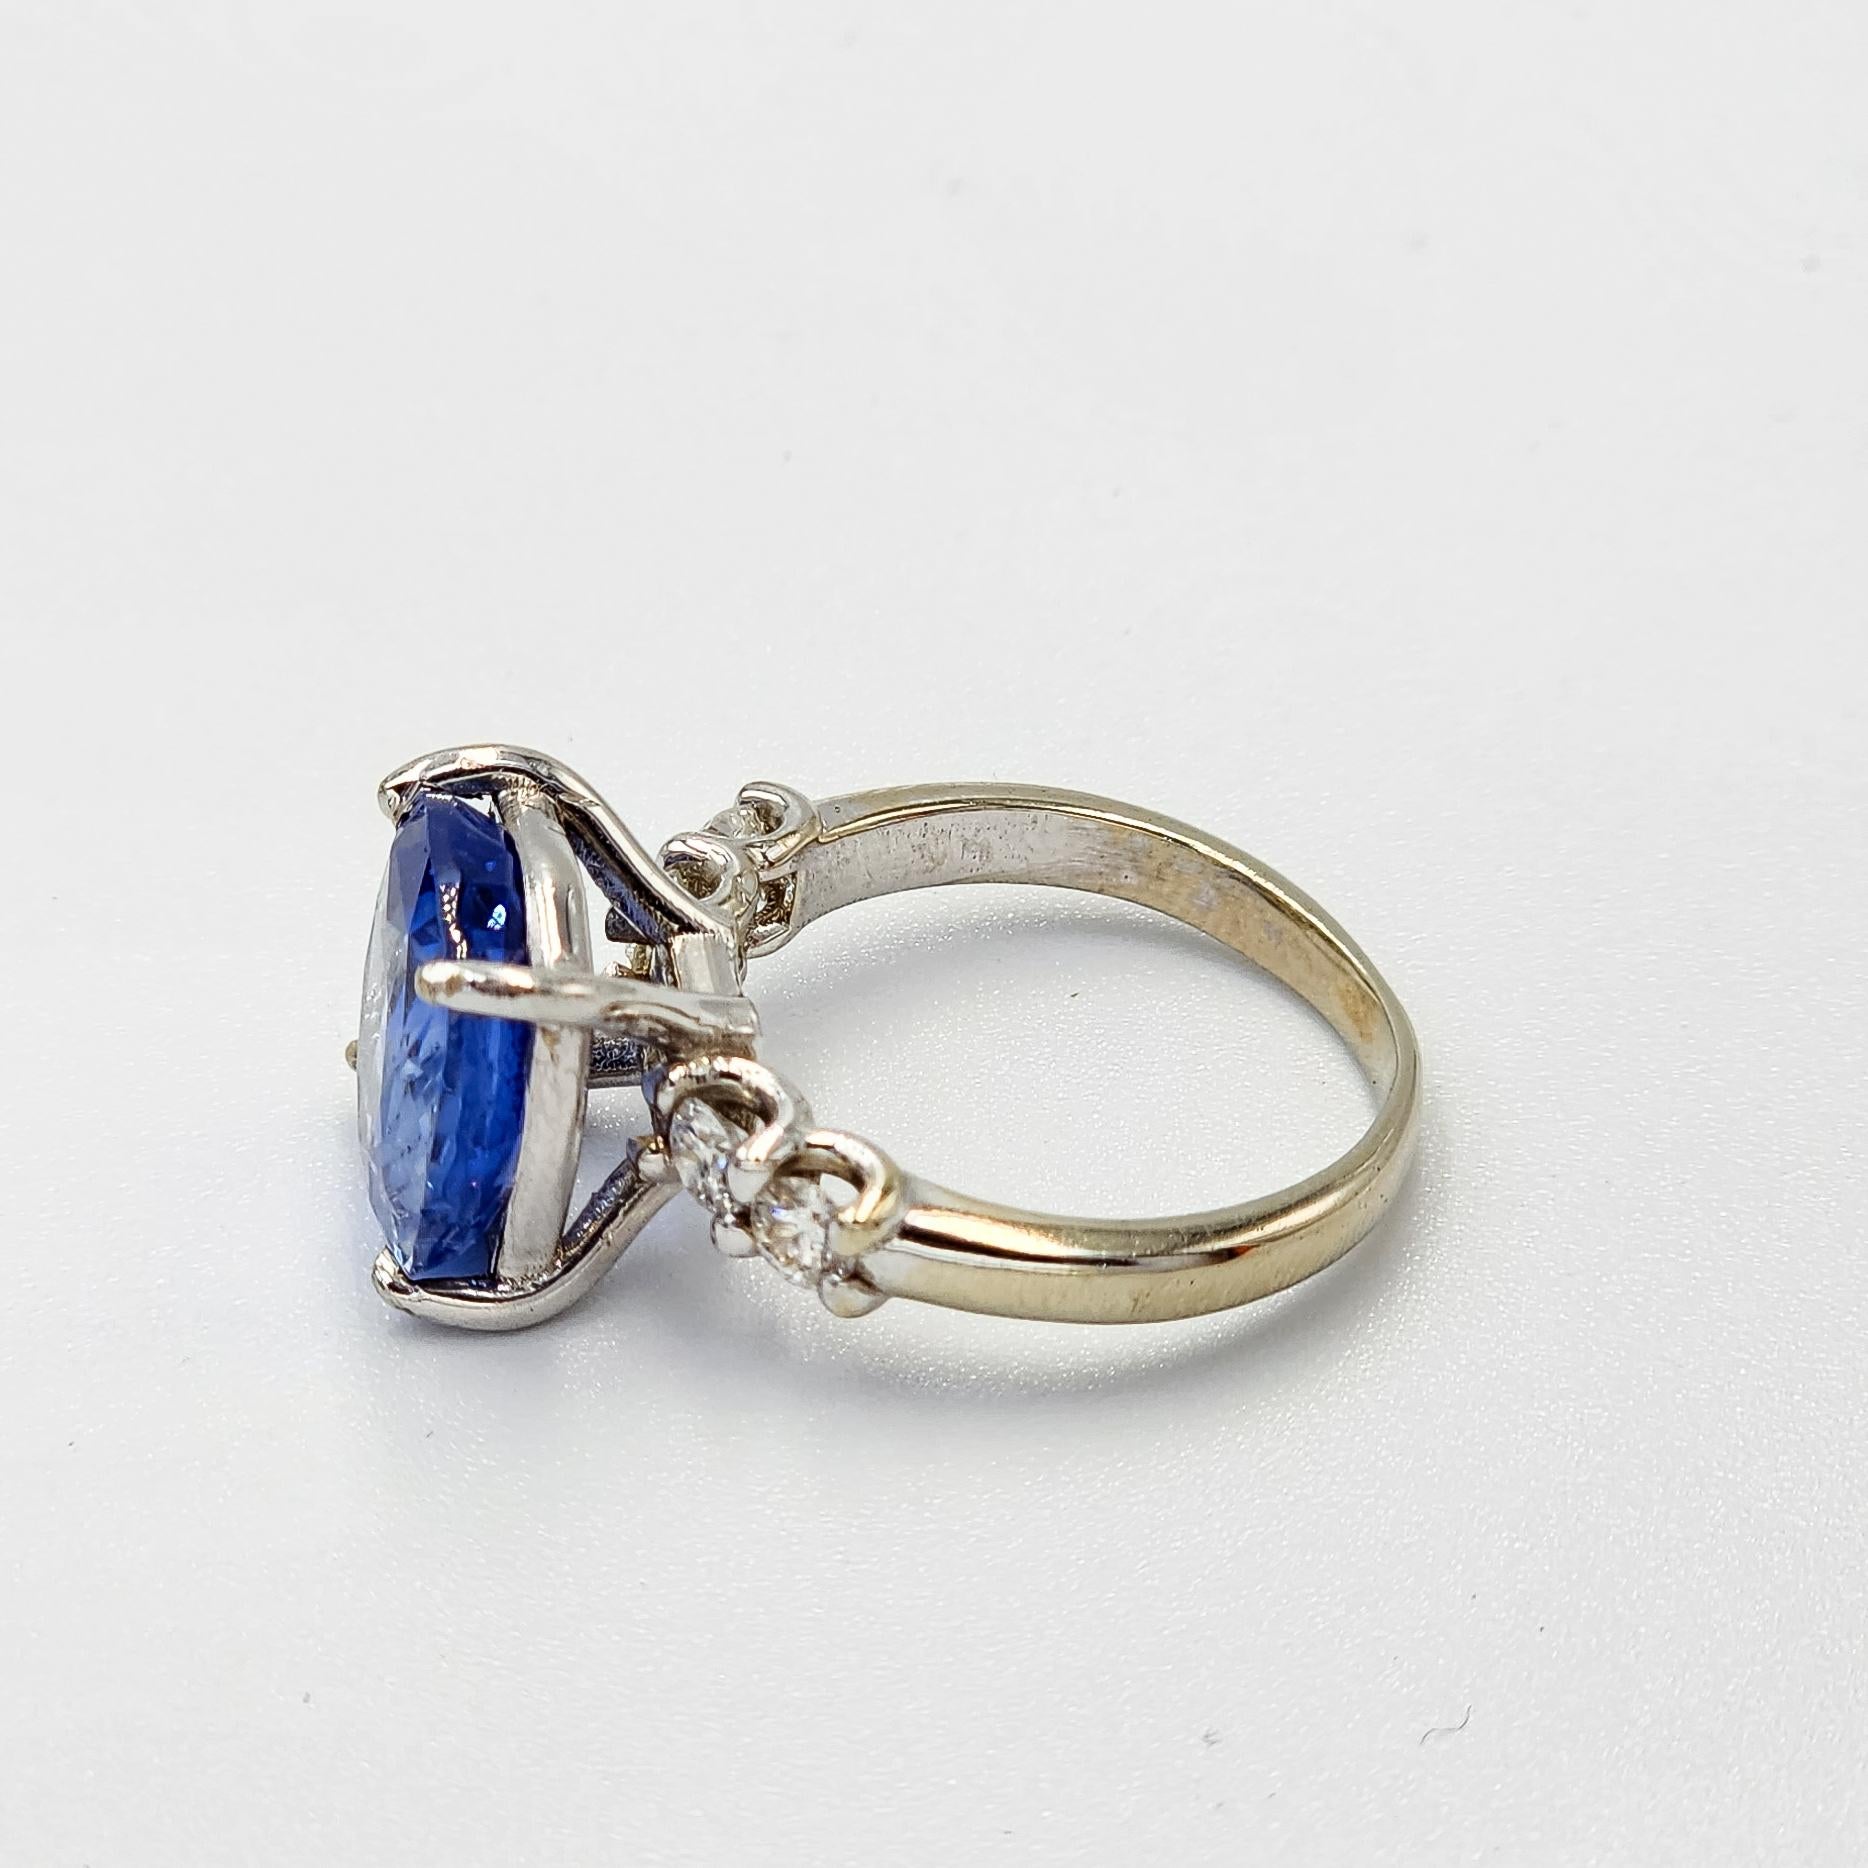 Dies ist eine schöne GIA zertifiziert Blue Sapphire Ring mit Diamanten und 14k Gold. Es ist ein wunderschönes und erstaunliches Stück mit lebendigen Farben, eingefasst in einen individuell gestalteten Ring, um seine natürliche Schönheit zu